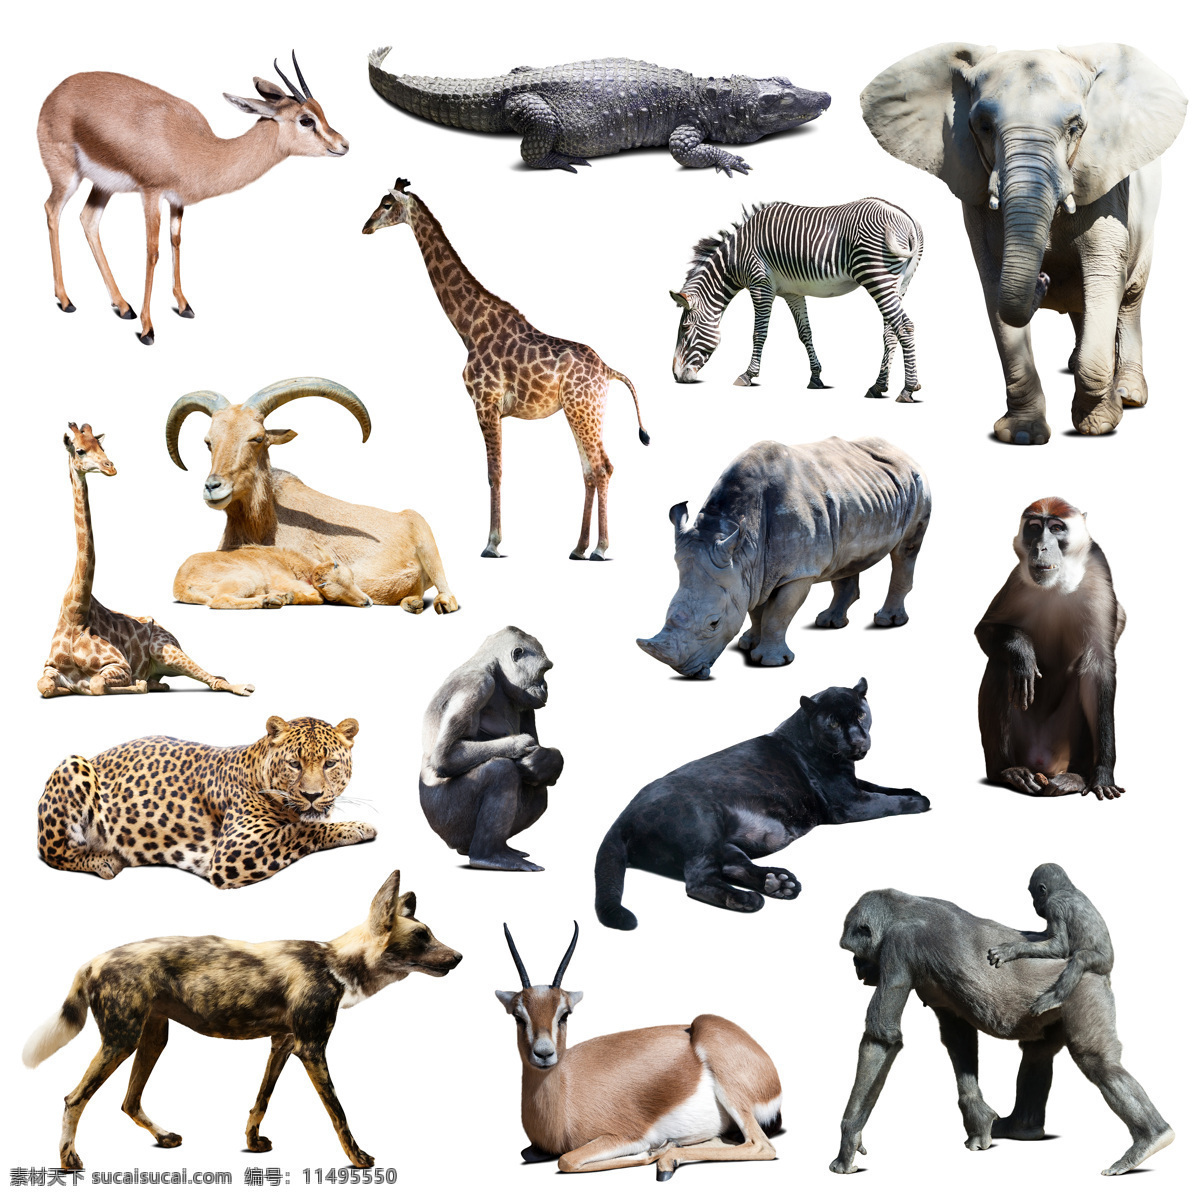 野生动物摄影 鹿 鳄鱼 大象 犀牛 猩猩 美洲虎 斑马 动物世界 陆地动物 生物世界 白色